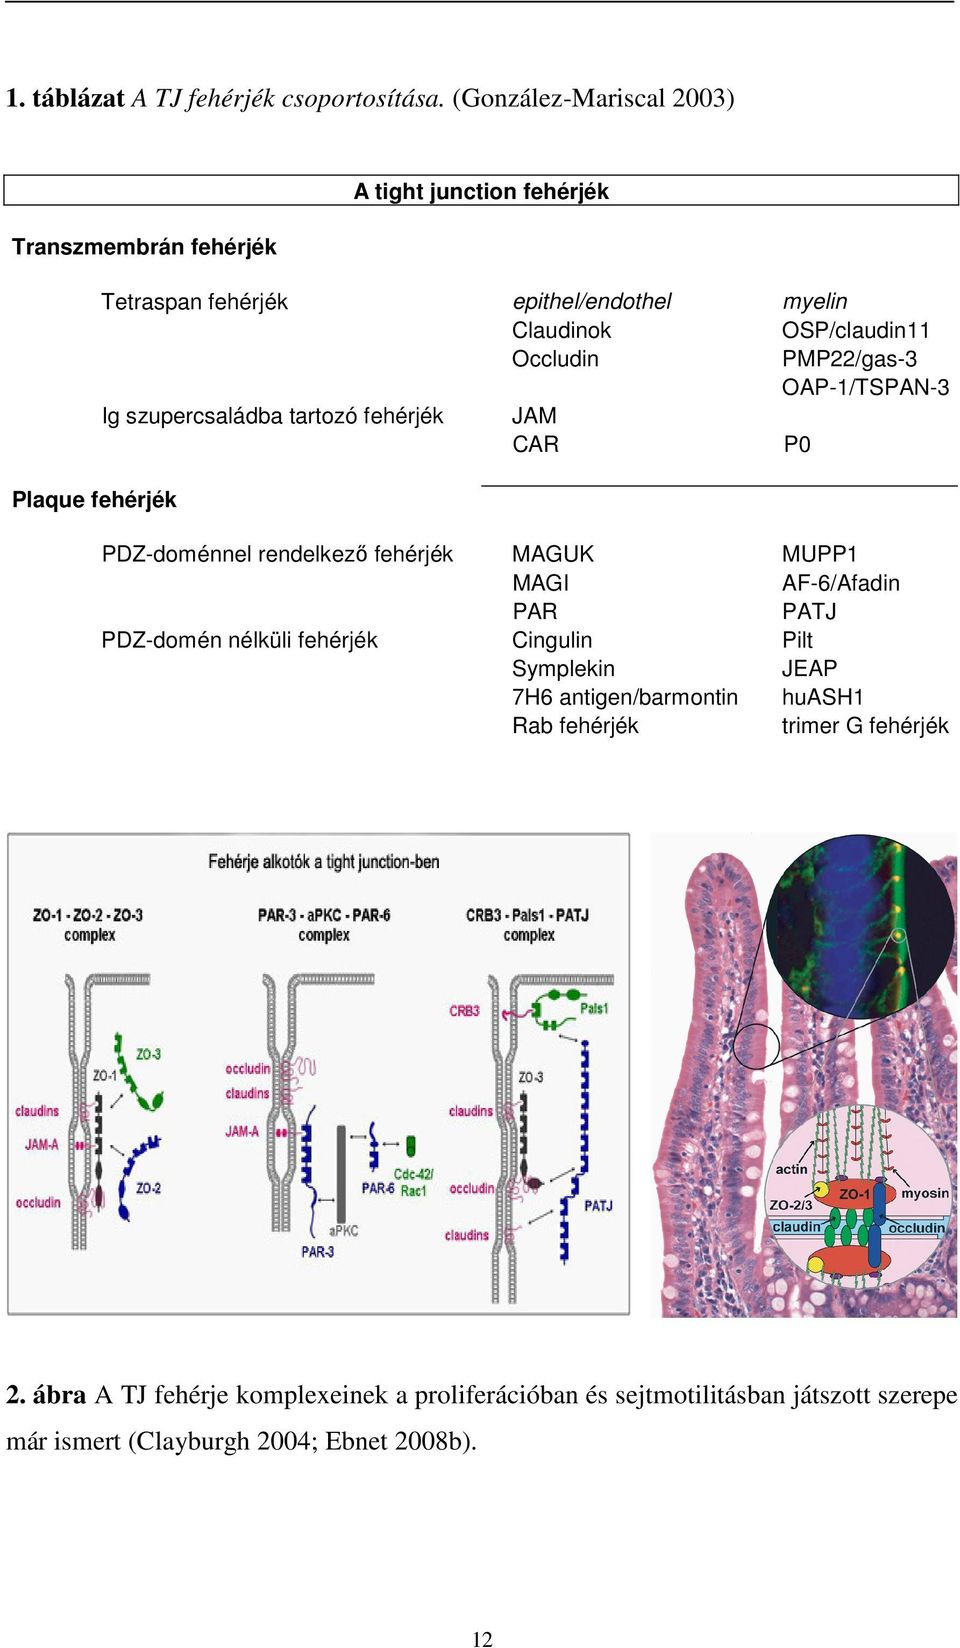 OSP/claudin11 Occludin PMP22/gas-3 OAP-1/TSPAN-3 Ig szupercsaládba tartozó fehérjék JAM CAR P0 PDZ-doménnel rendelkező fehérjék MAGUK MUPP1 MAGI